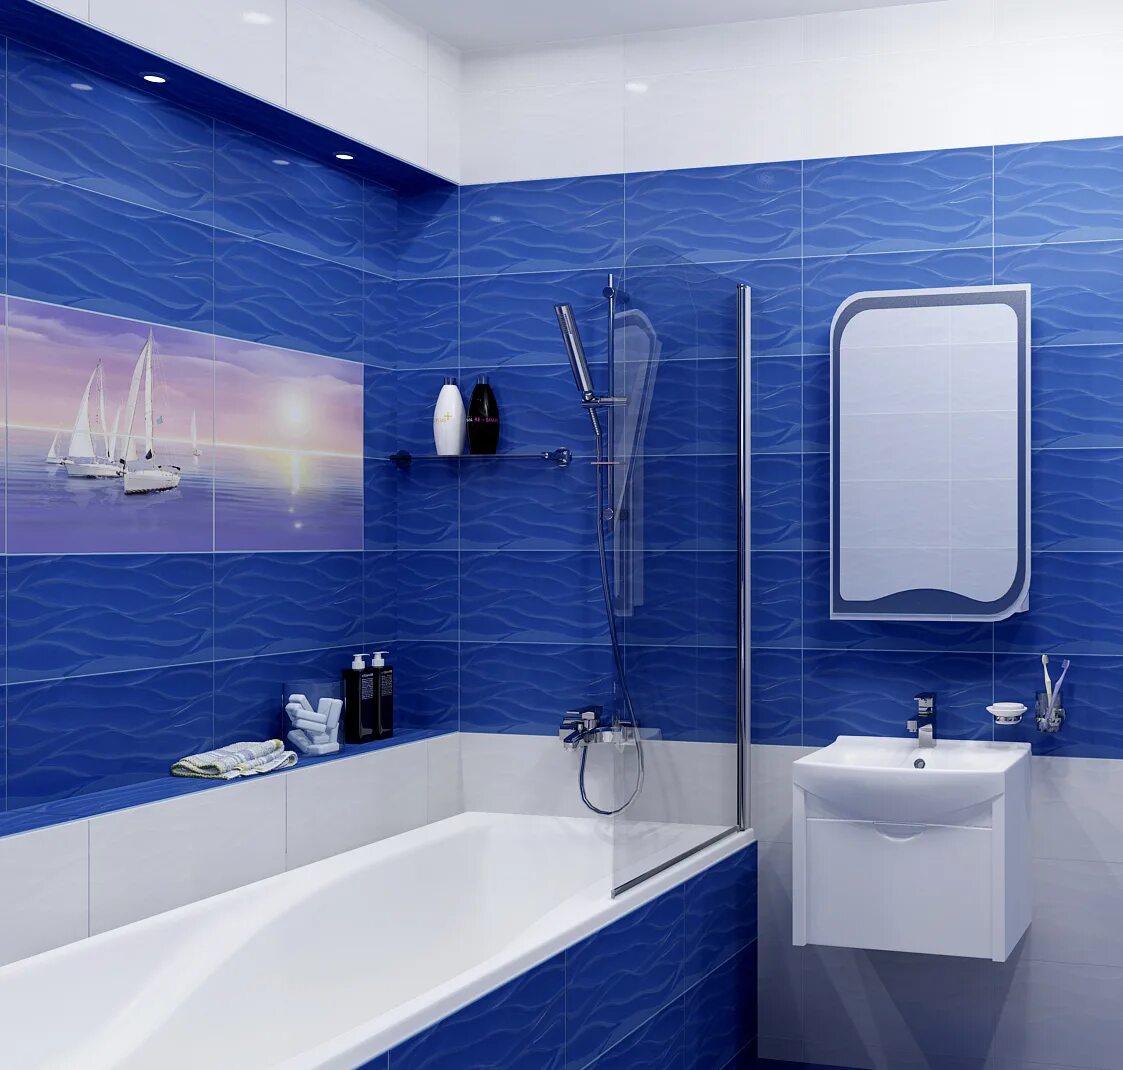 Ванная панелями работ. Синяя ванная комната. Ванная в синем цвете. Плитка для ванной комнаты синяя. Плитка в ванную синяя.